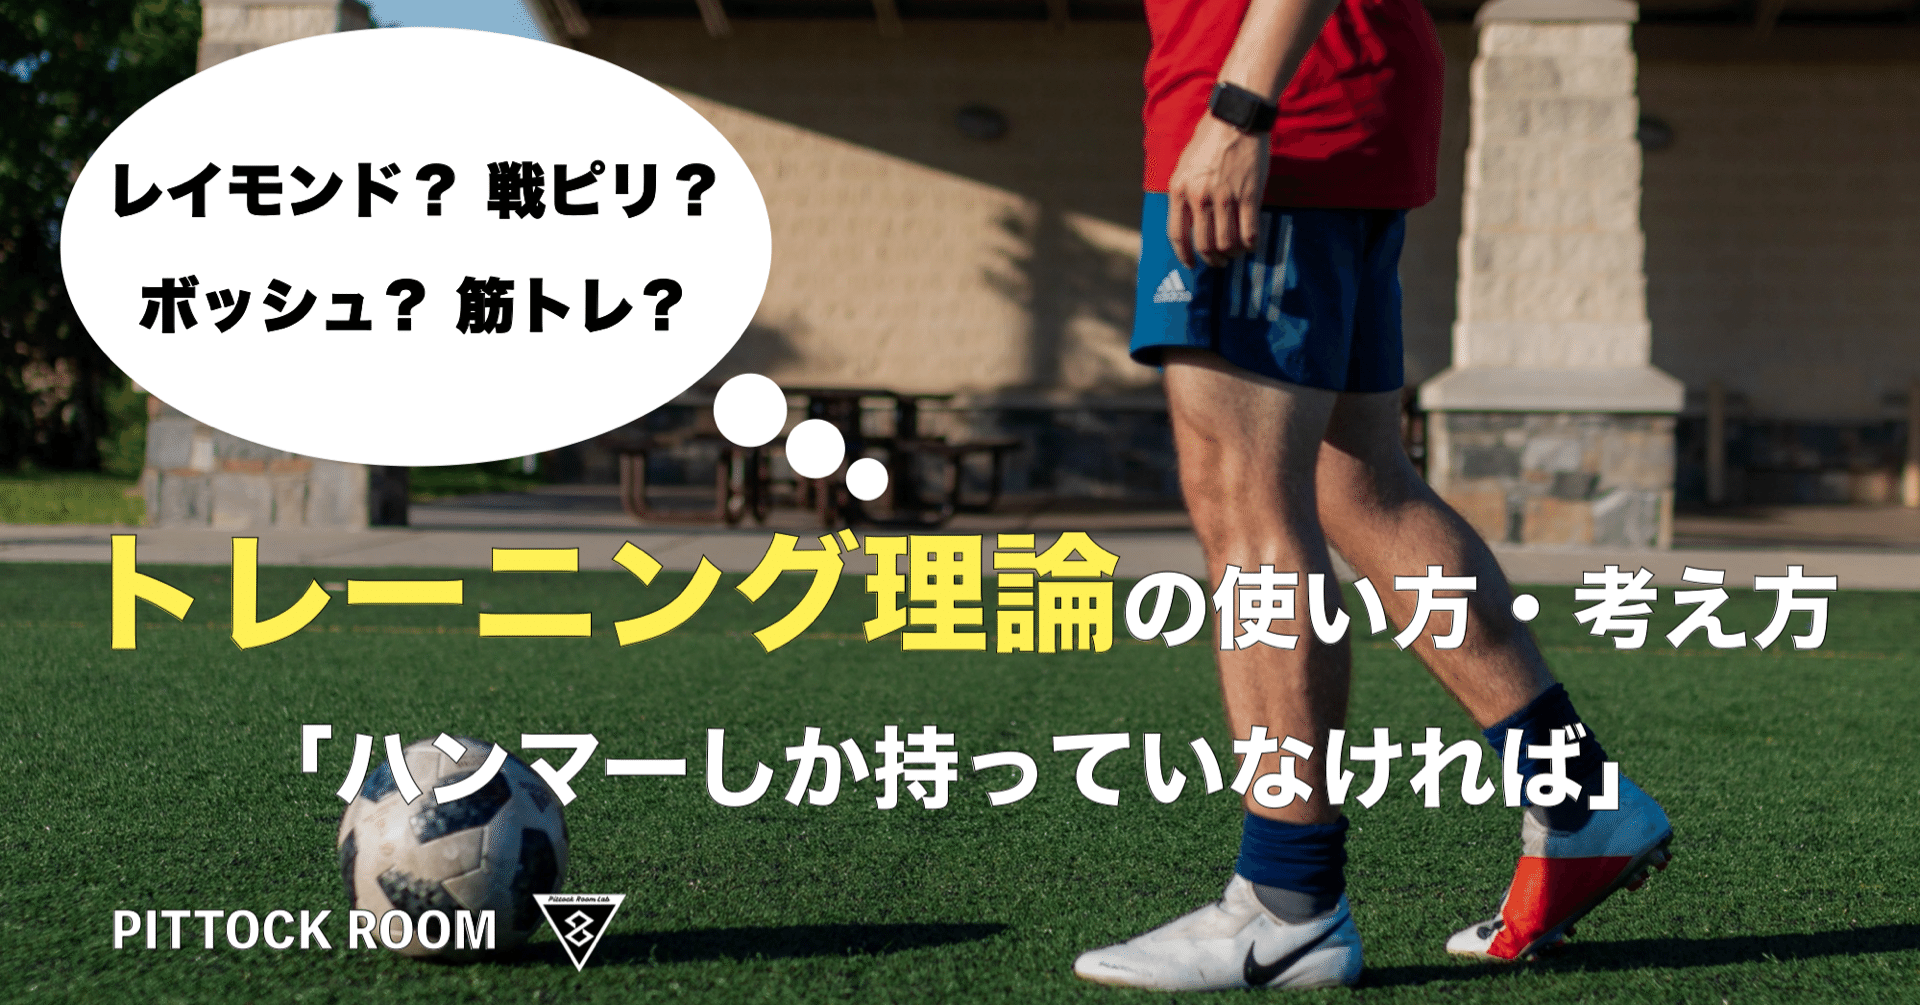 トレーニング理論の使い方 考え方 ハンマーしか持っていなければ サッカーのピリオダイゼーション 戦ピリ ボッシュ 筋トレ Keisuke Matsumoto Note